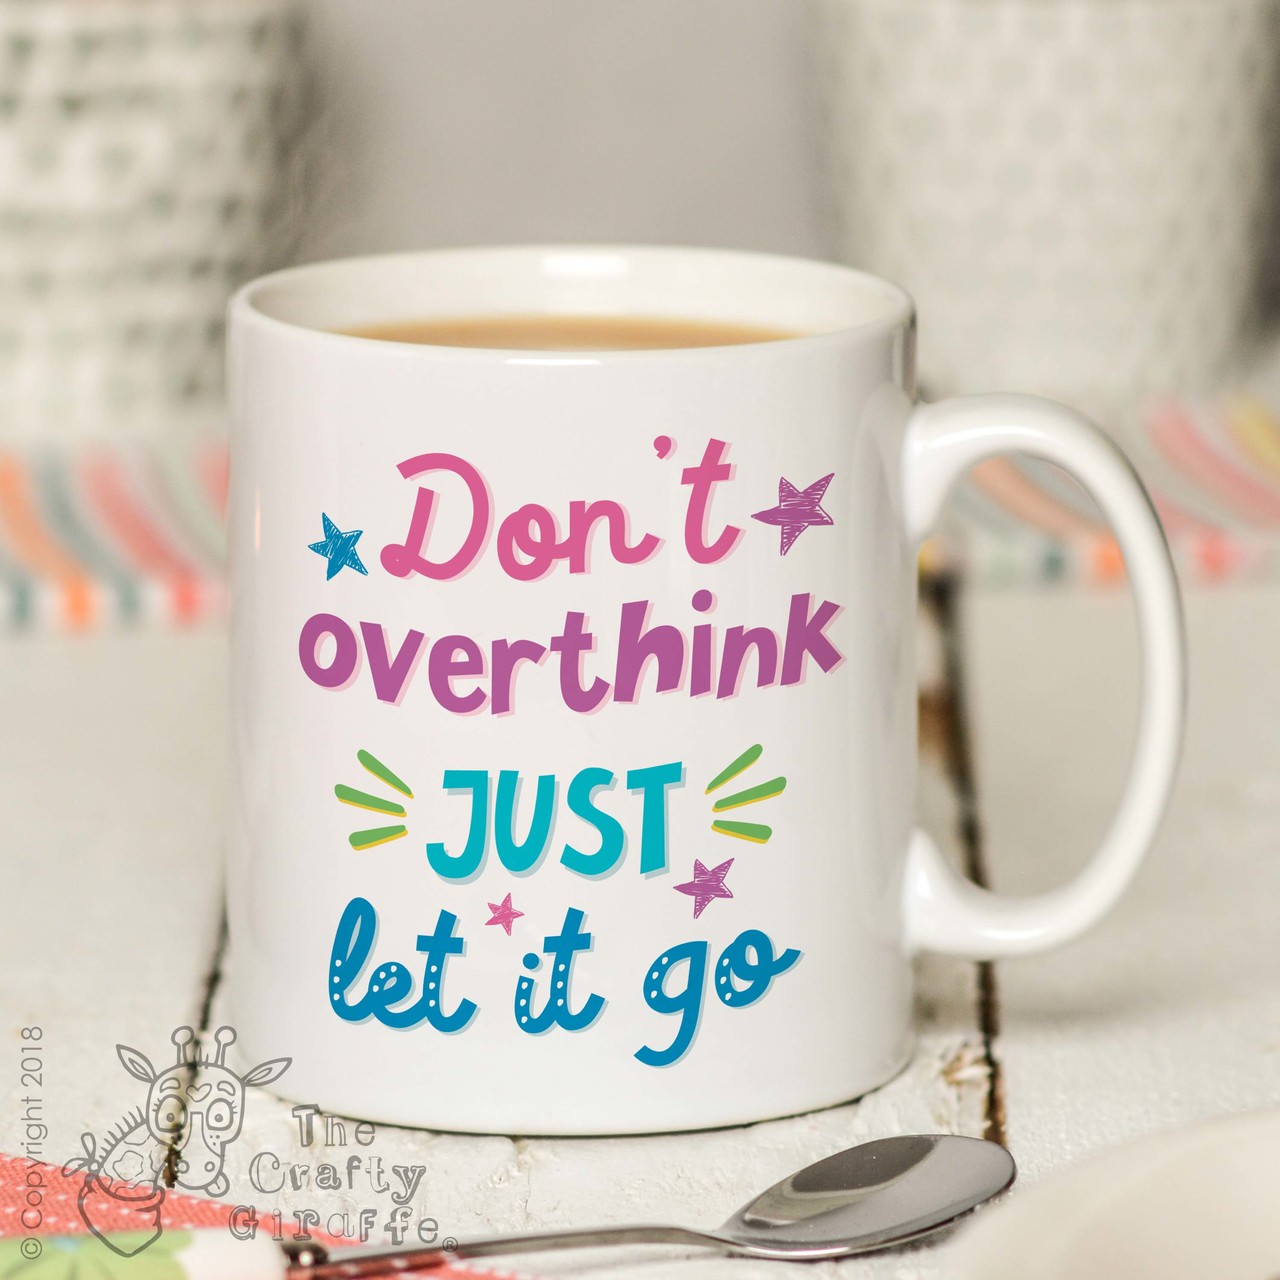 Don’t overthink just let it go Mug